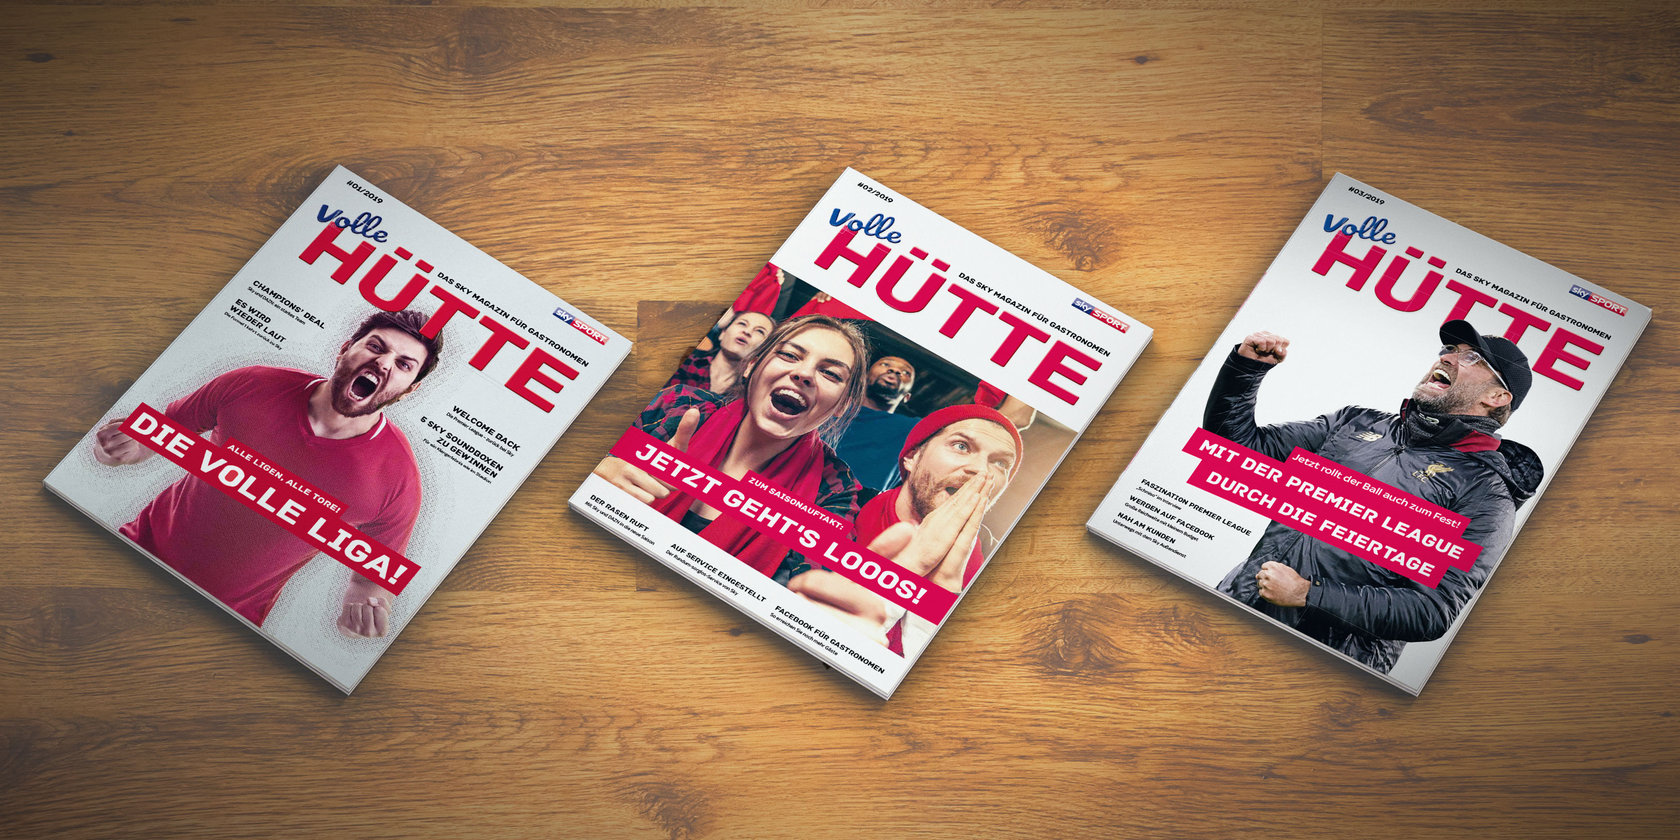 B2B Kundenmagazin von SKY "Volle Hüte", 3 Magazin-Cover